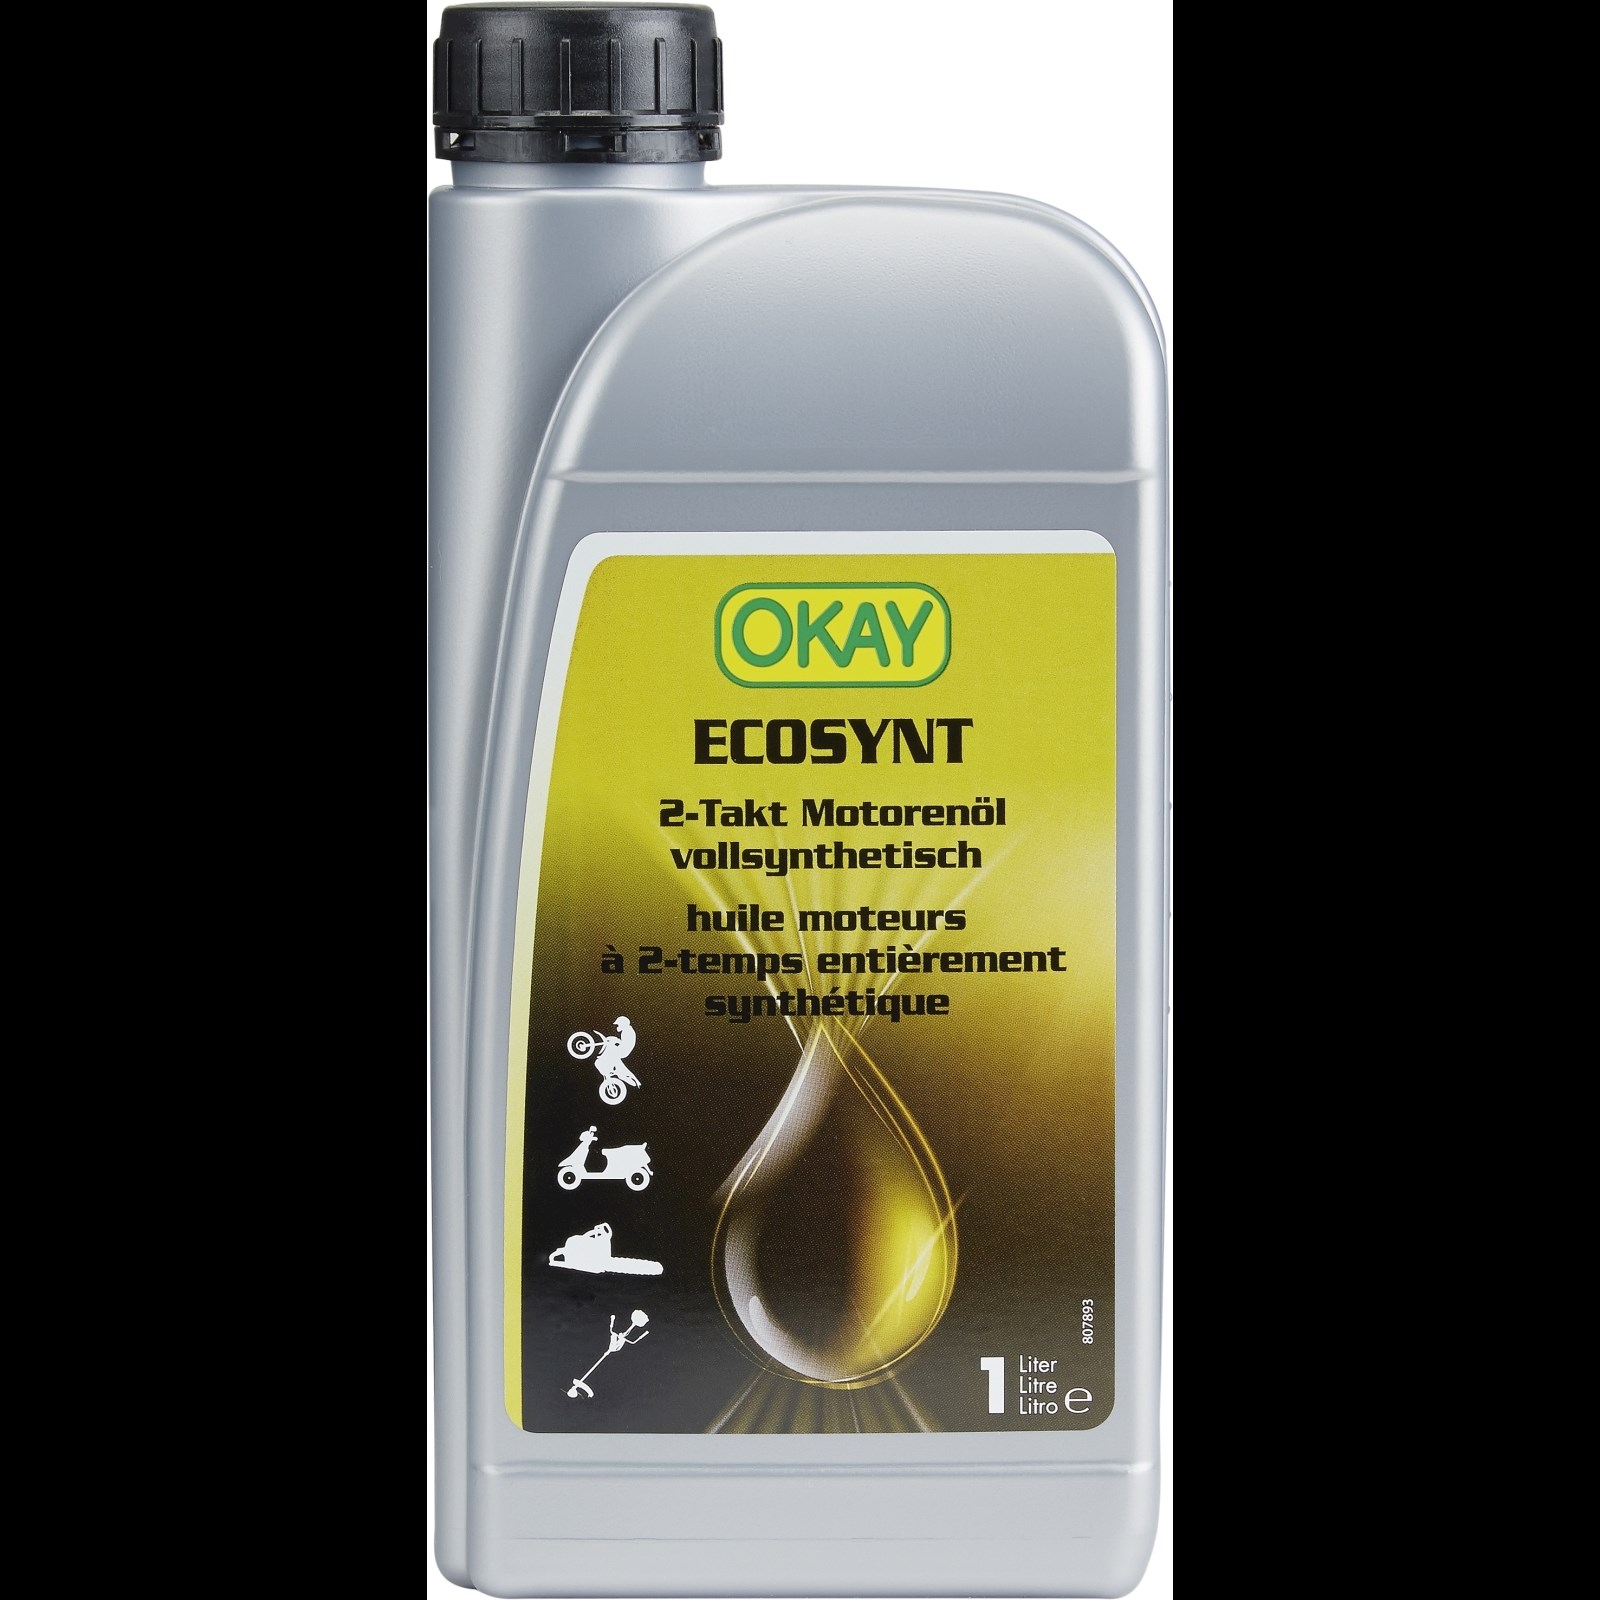 Motorenöl 2-Takt Ecosynt Okay 1 l kaufen - Motorenöle - LANDI